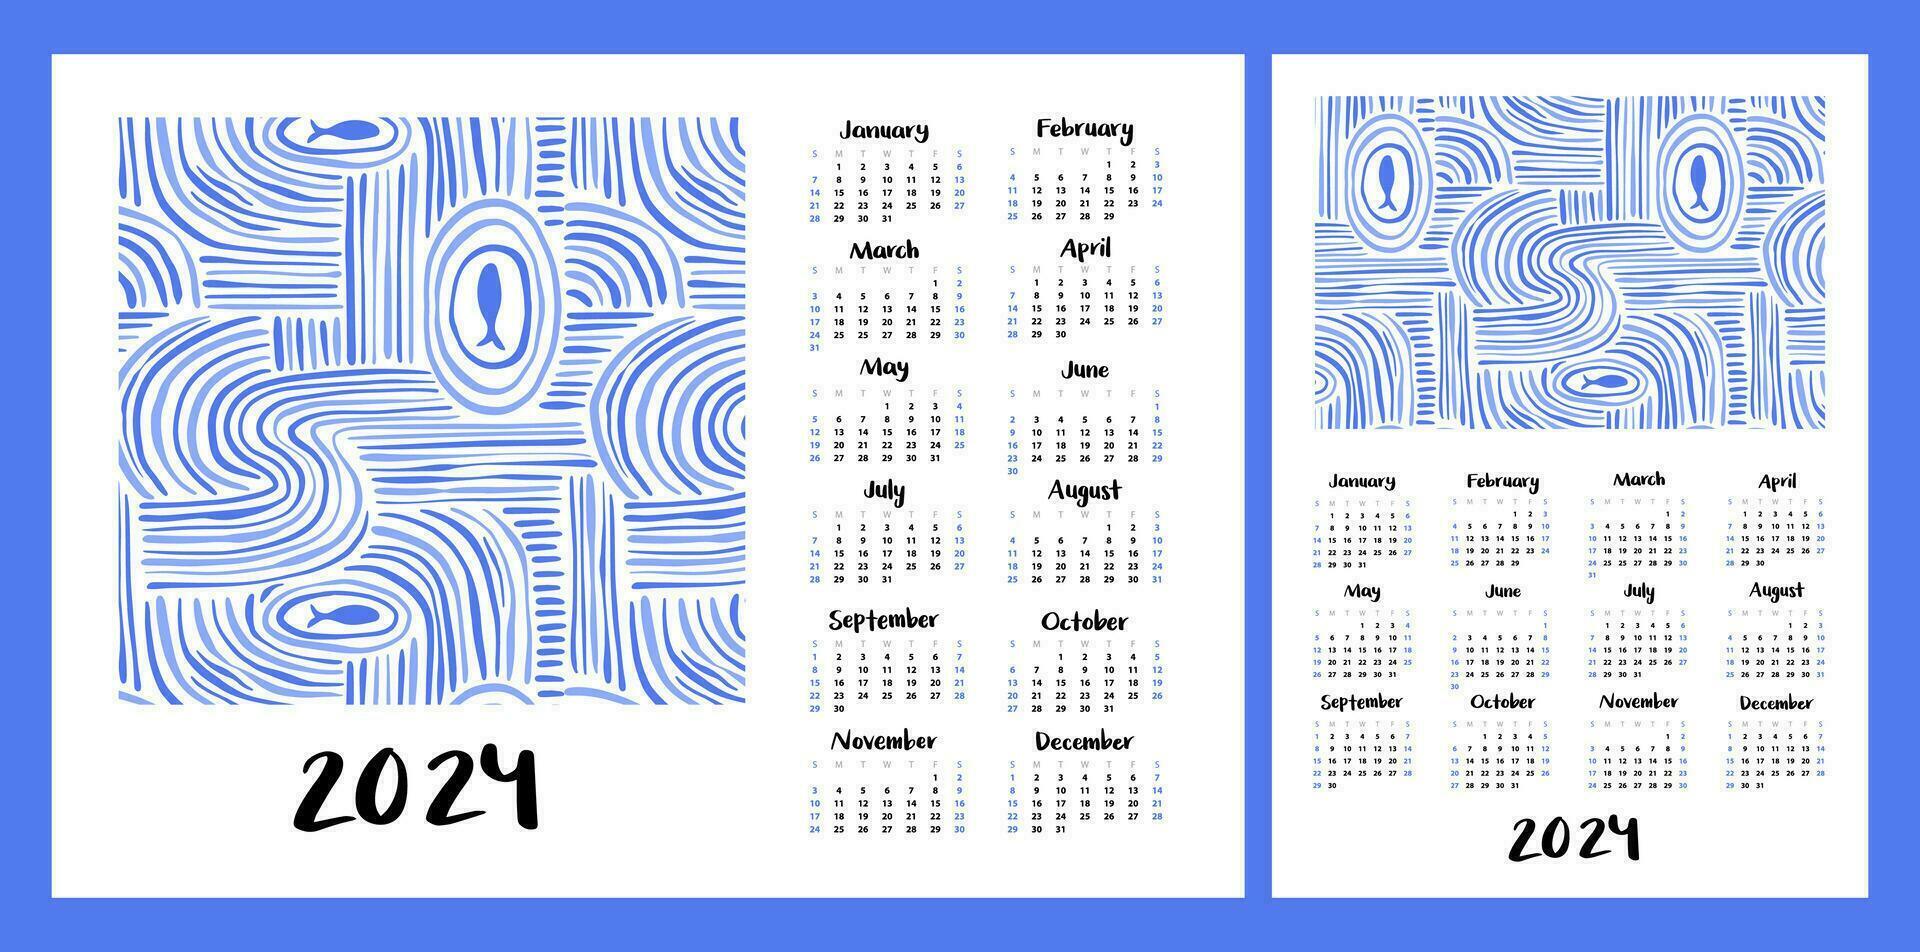 kalender lay-out voor 2024. abstract marinier illustratie met golven en vis. verticaal en horizontaal indelingen voor a4, a5 het drukken vector